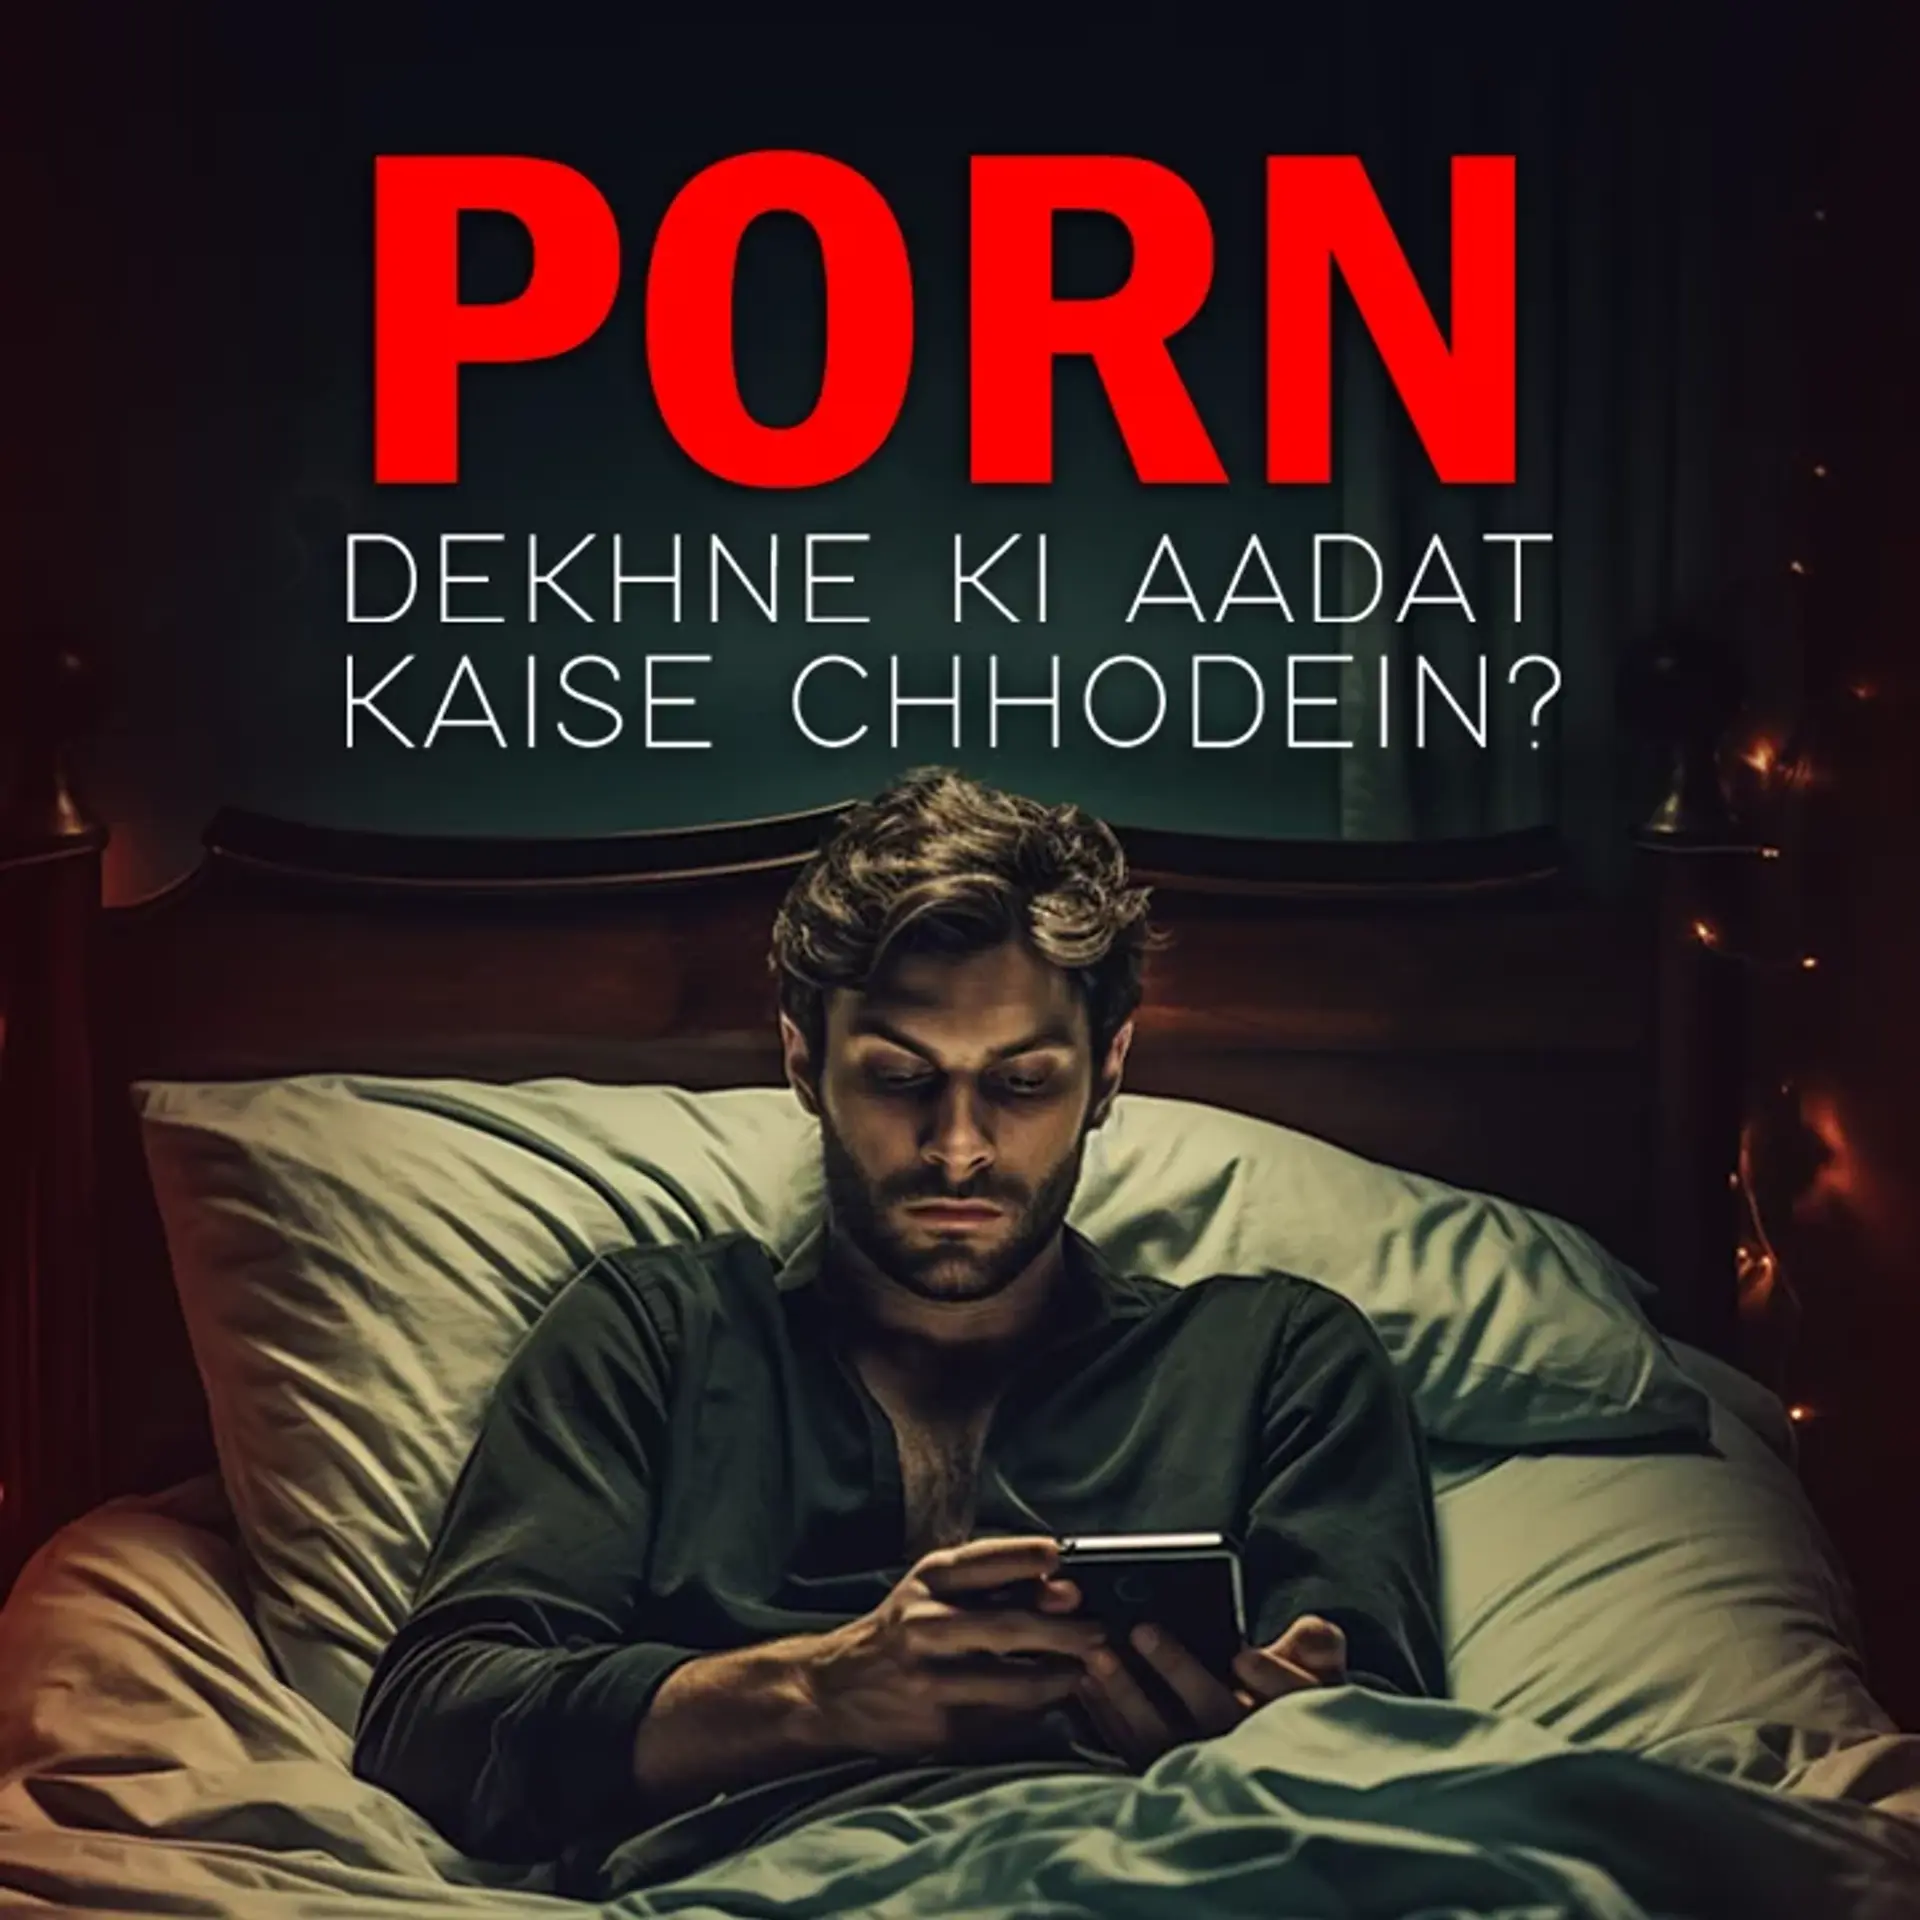 Porn Ki - Porn Dekhne ki Aadat Kaise Chhodein?